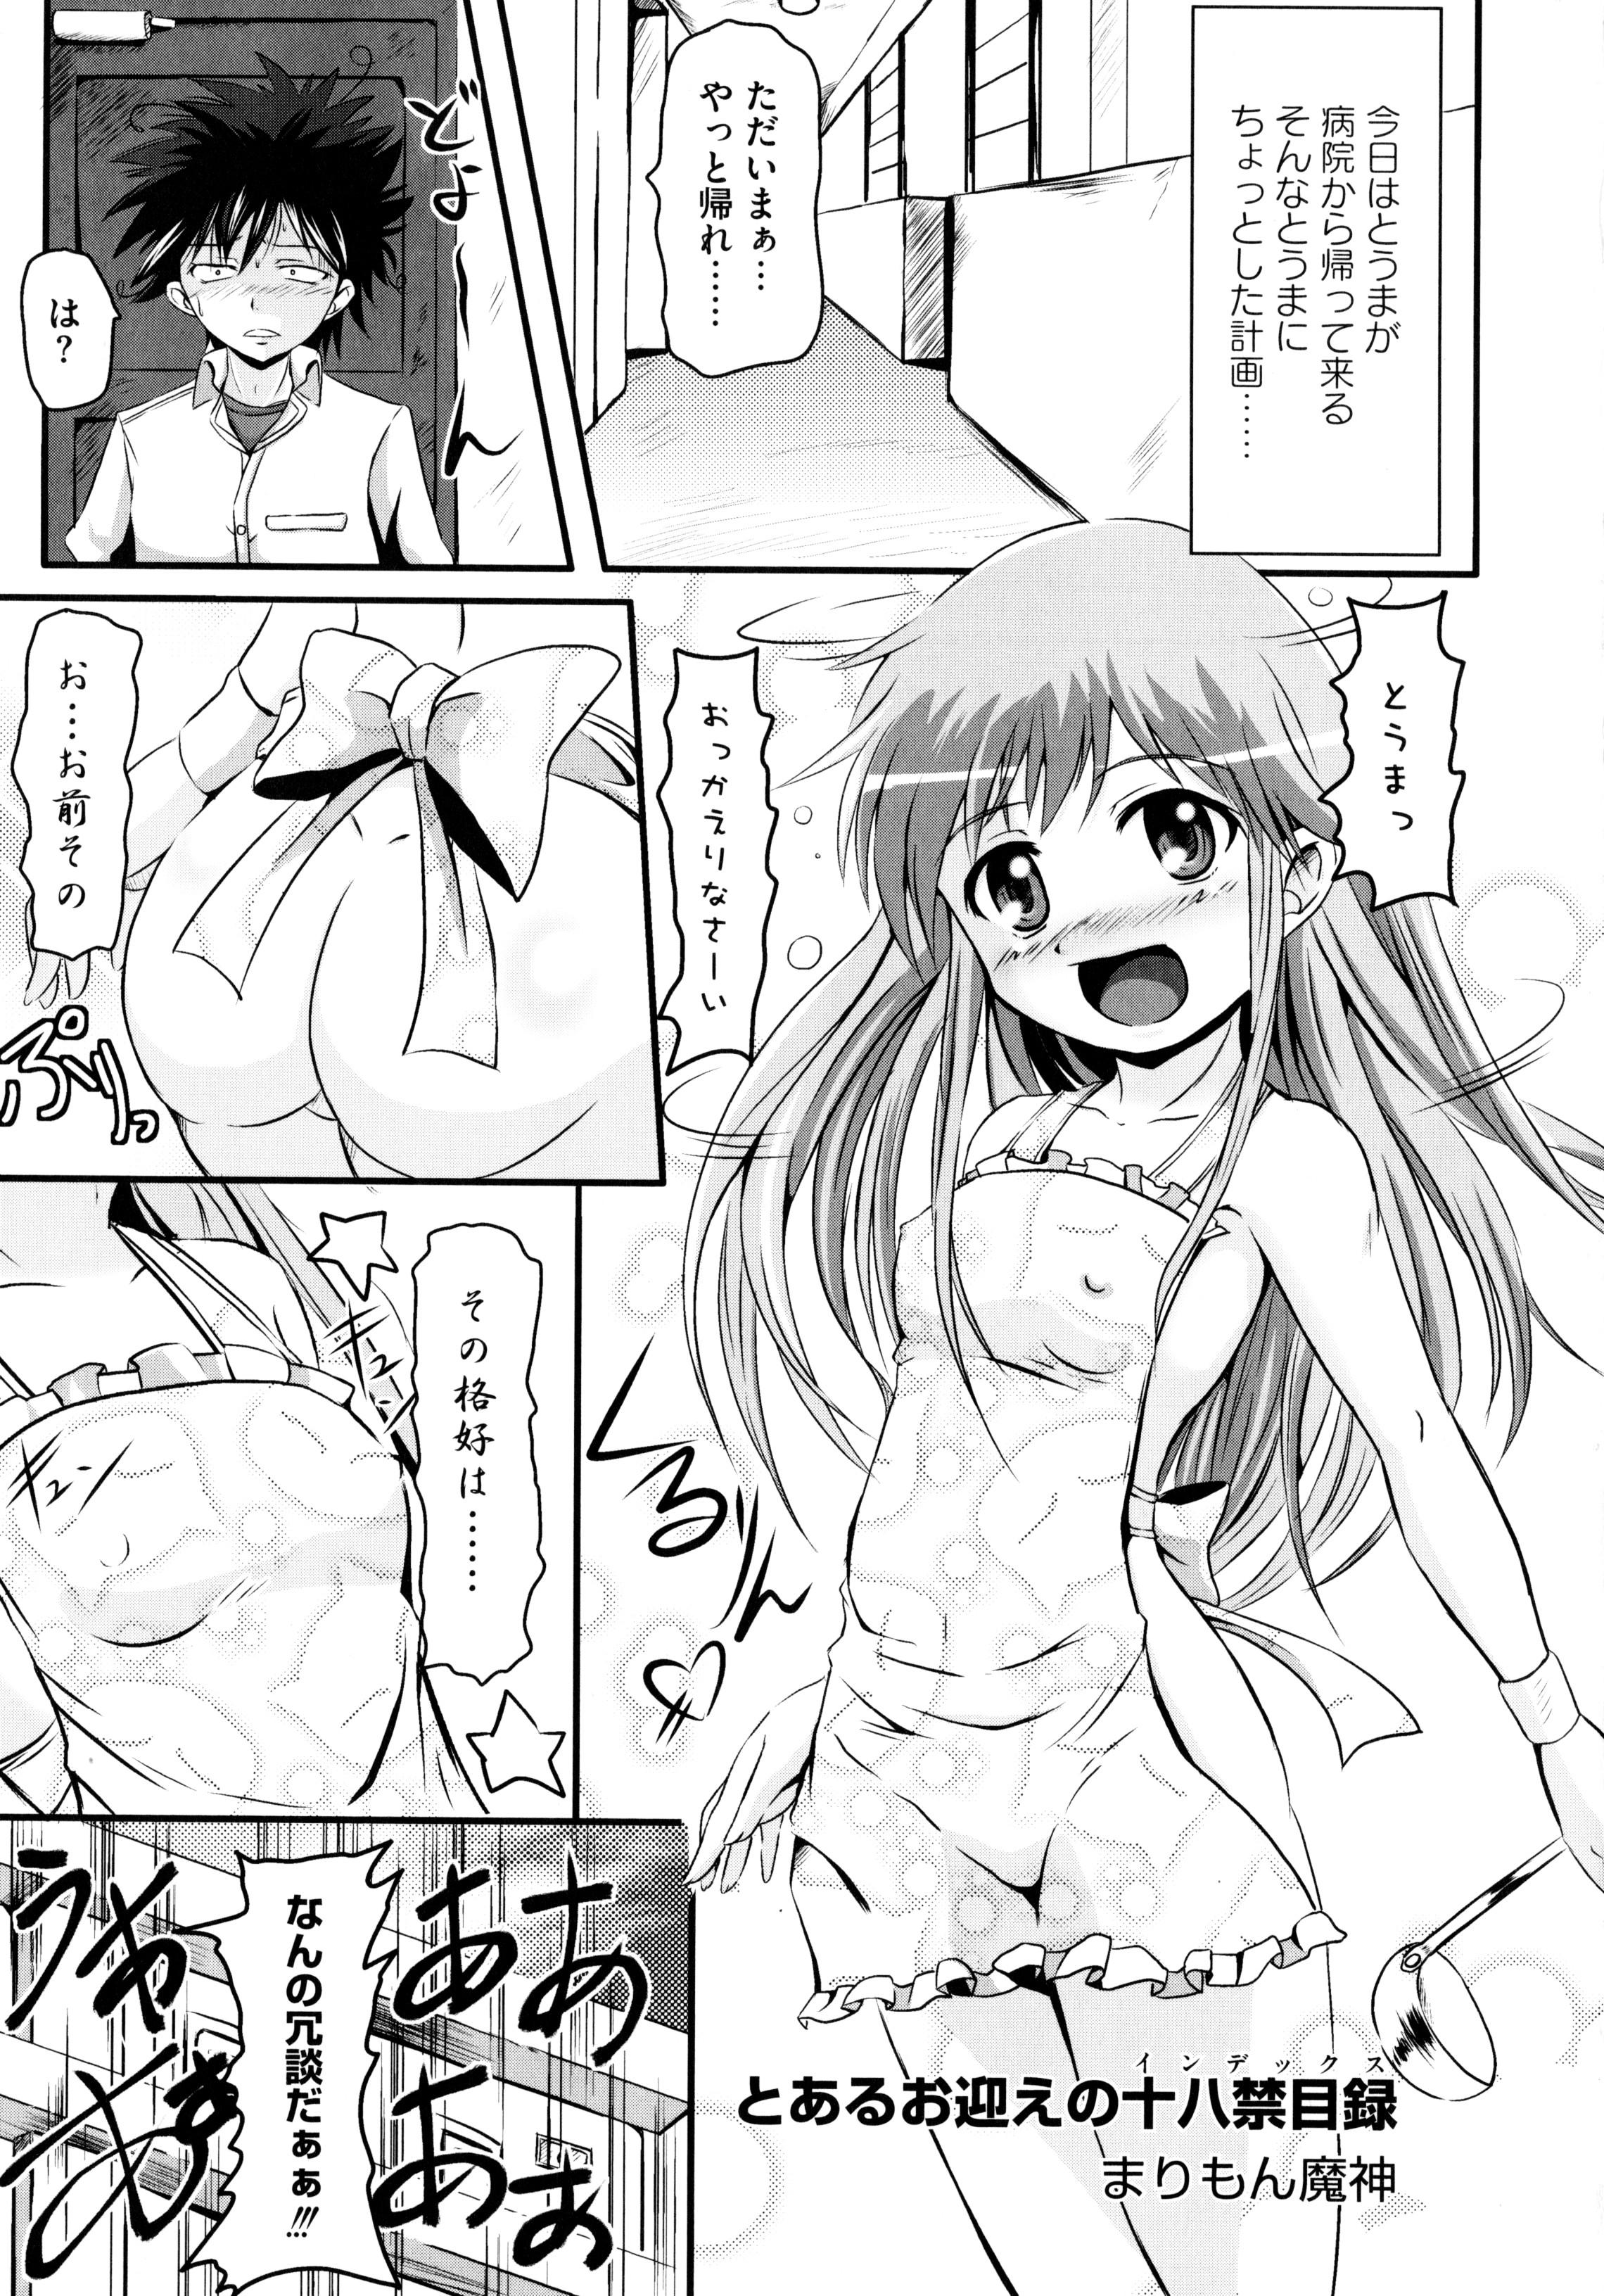 Teen Sex Toaru Inbi na Erosho Mokuroku - Toaru kagaku no railgun Toaru majutsu no index Boob - Page 5